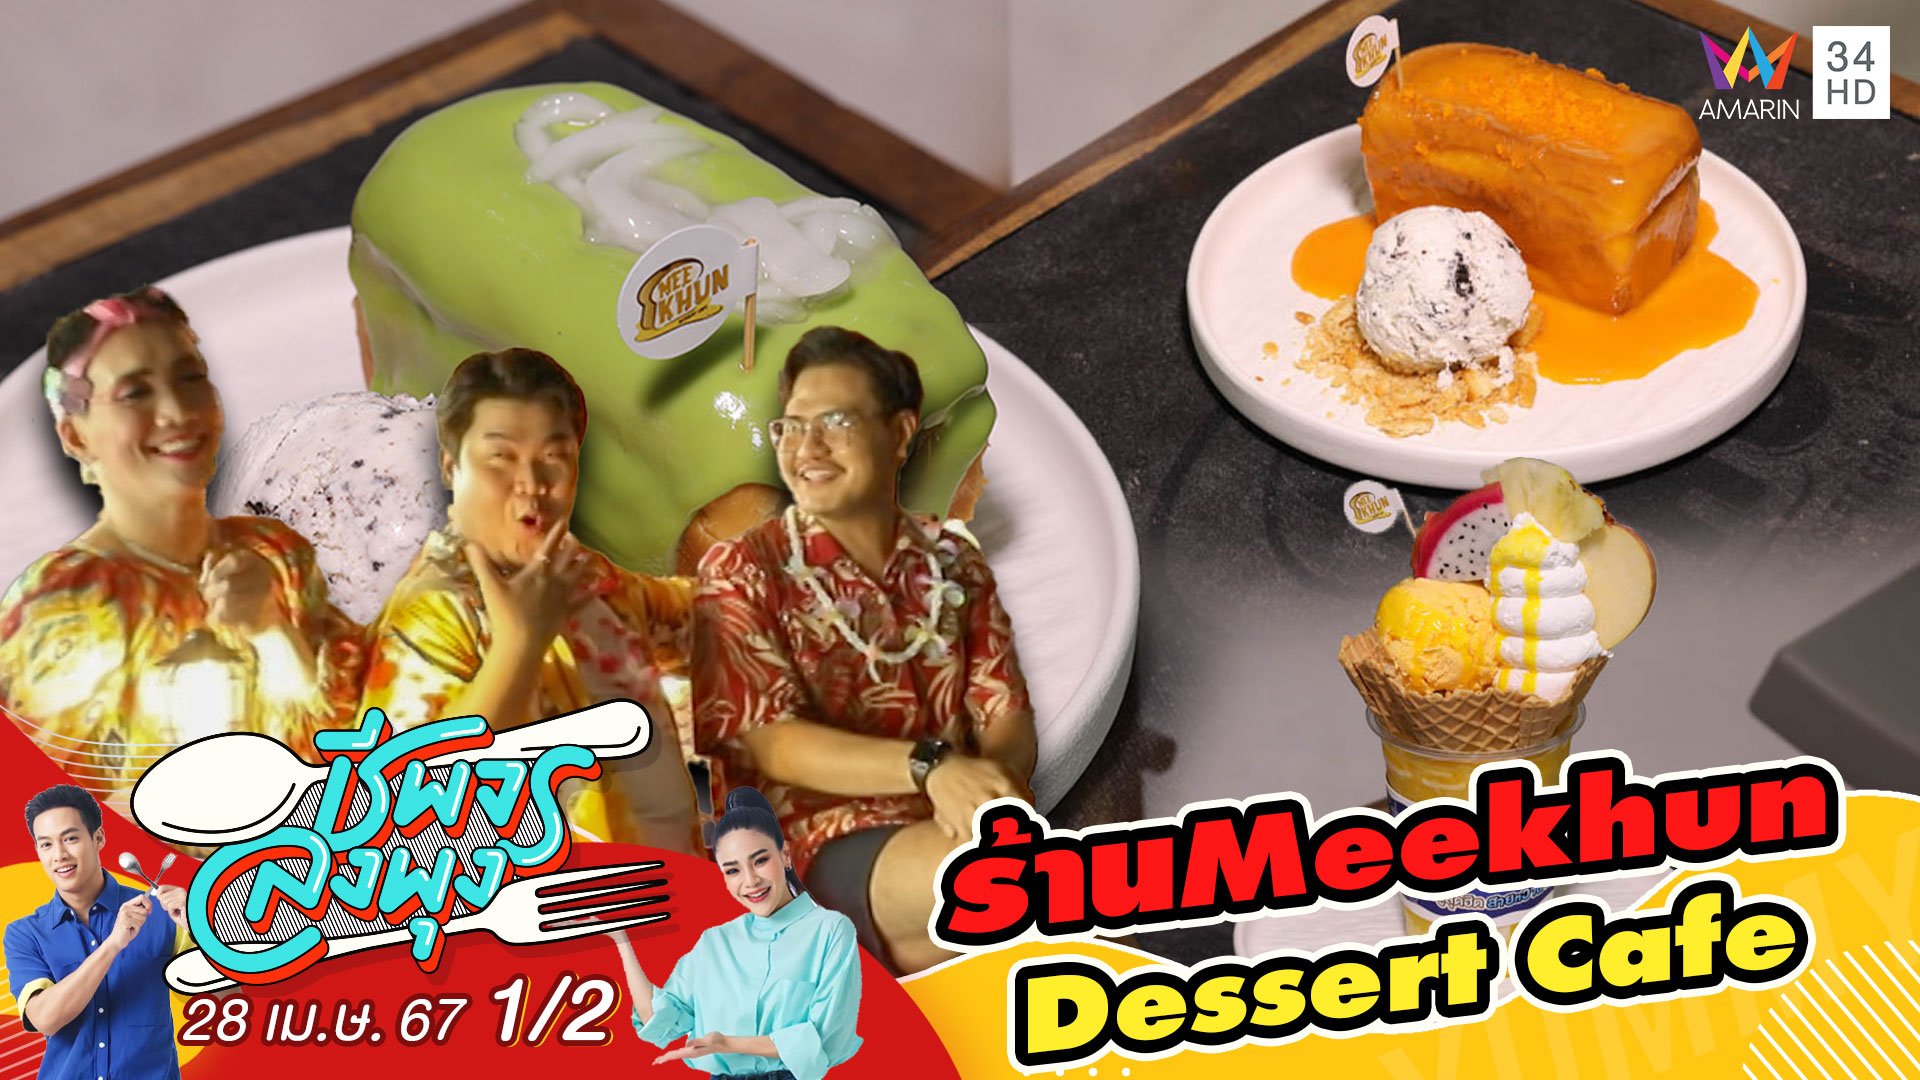 3 ตัวตึงแห่งรายการฟาดหัวข่าว" พาไป Meekhun Dessert Cafe | ชีพจรลงพุง | 28 เม.ย. 67 (1/3) | AMARIN TVHD34